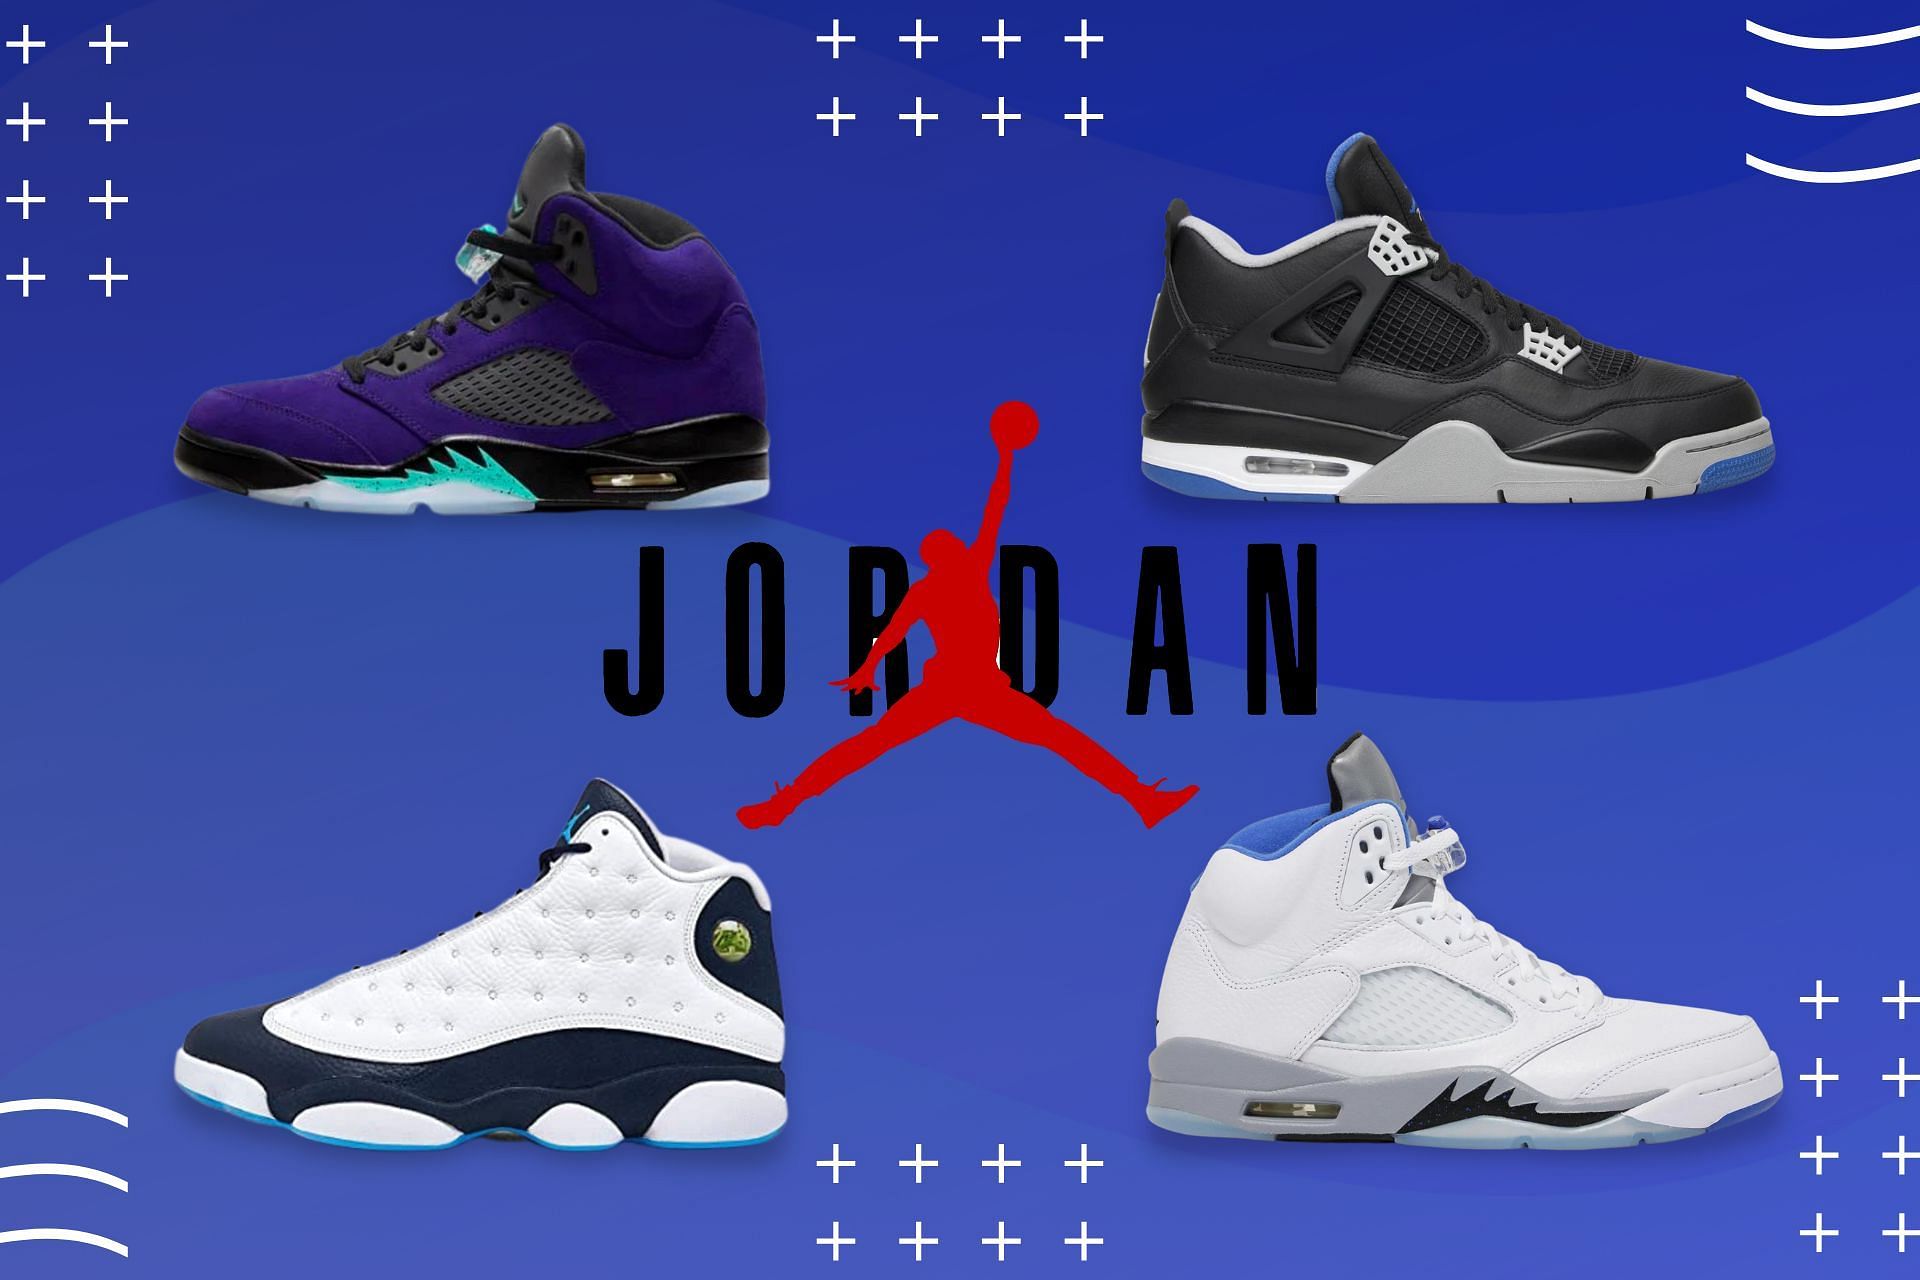 Upcoming Air Jordan 13 Low Releases for 2017 - JustFreshKicks